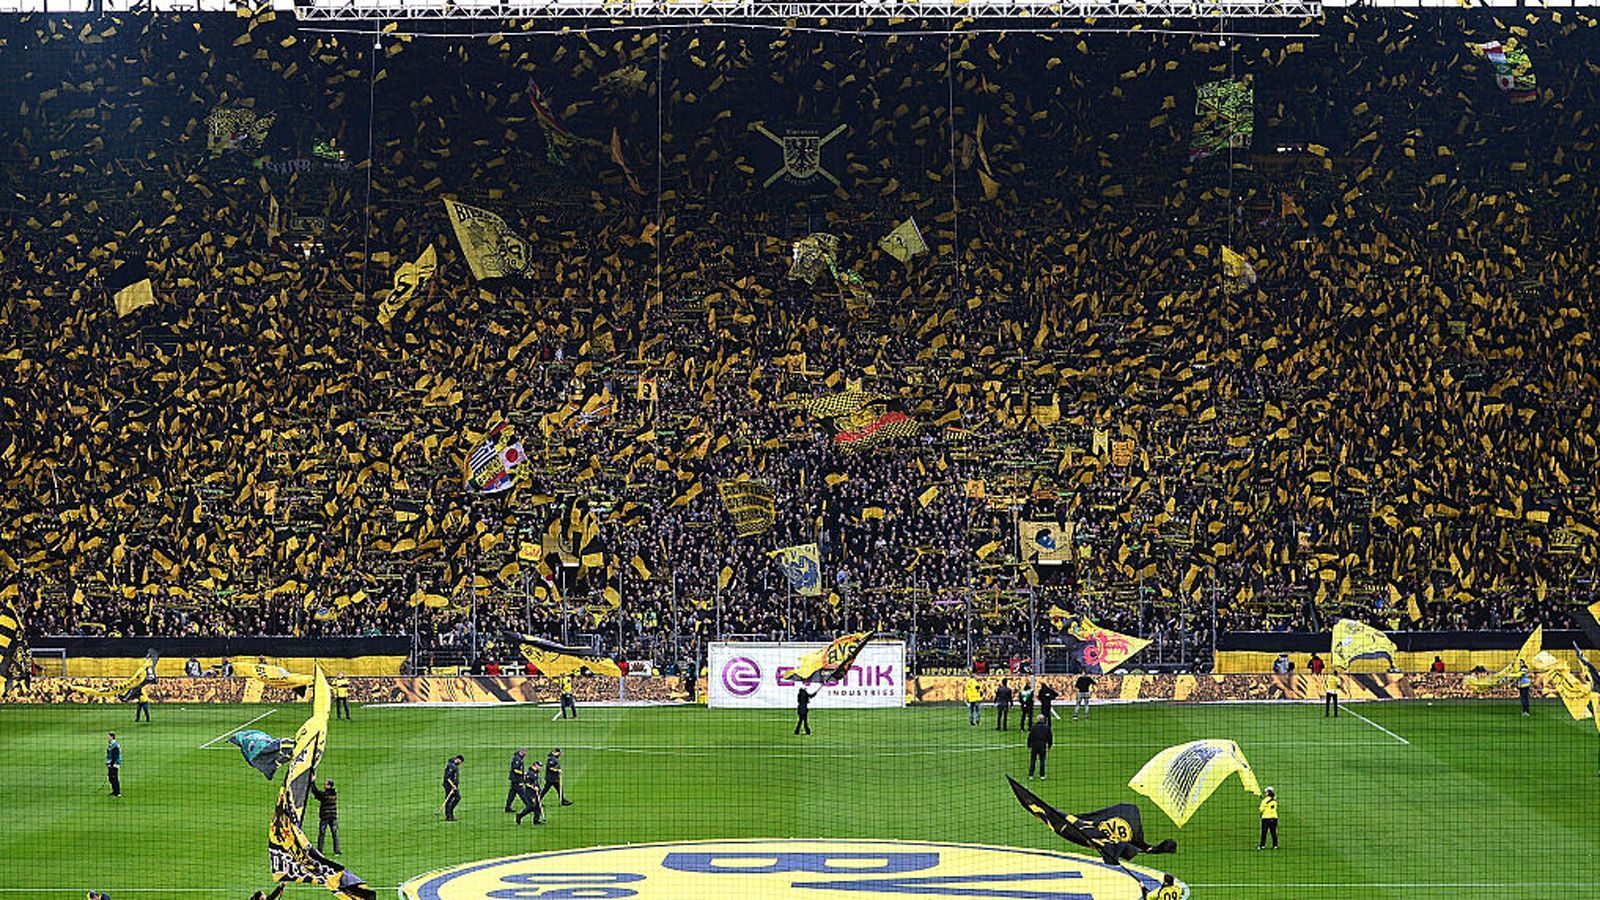 
                <strong>Platz 1: Borussia Dortmund </strong><br>
                Signal Iduna Park, DortmundZuschauerschnitt: 80.230
              